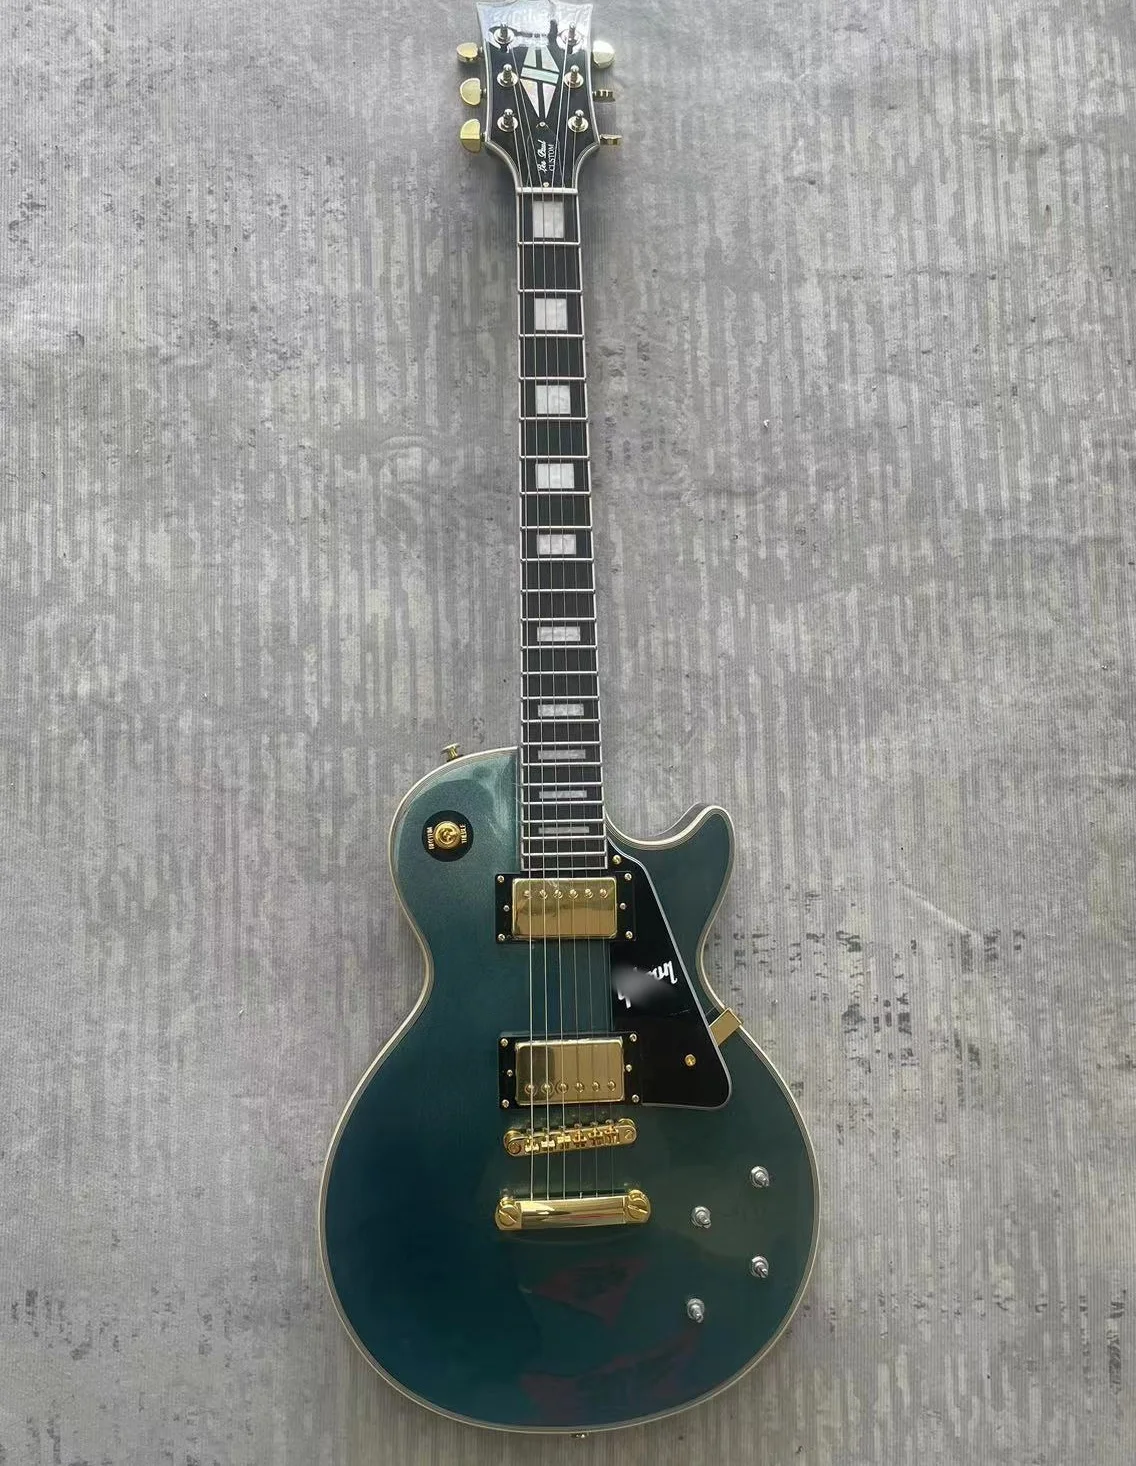 

G логотип для гитары, краска в виде синего серебряного порошка, меньше P, корпус из красного дерева, сделано в Китае, бесплатная доставка